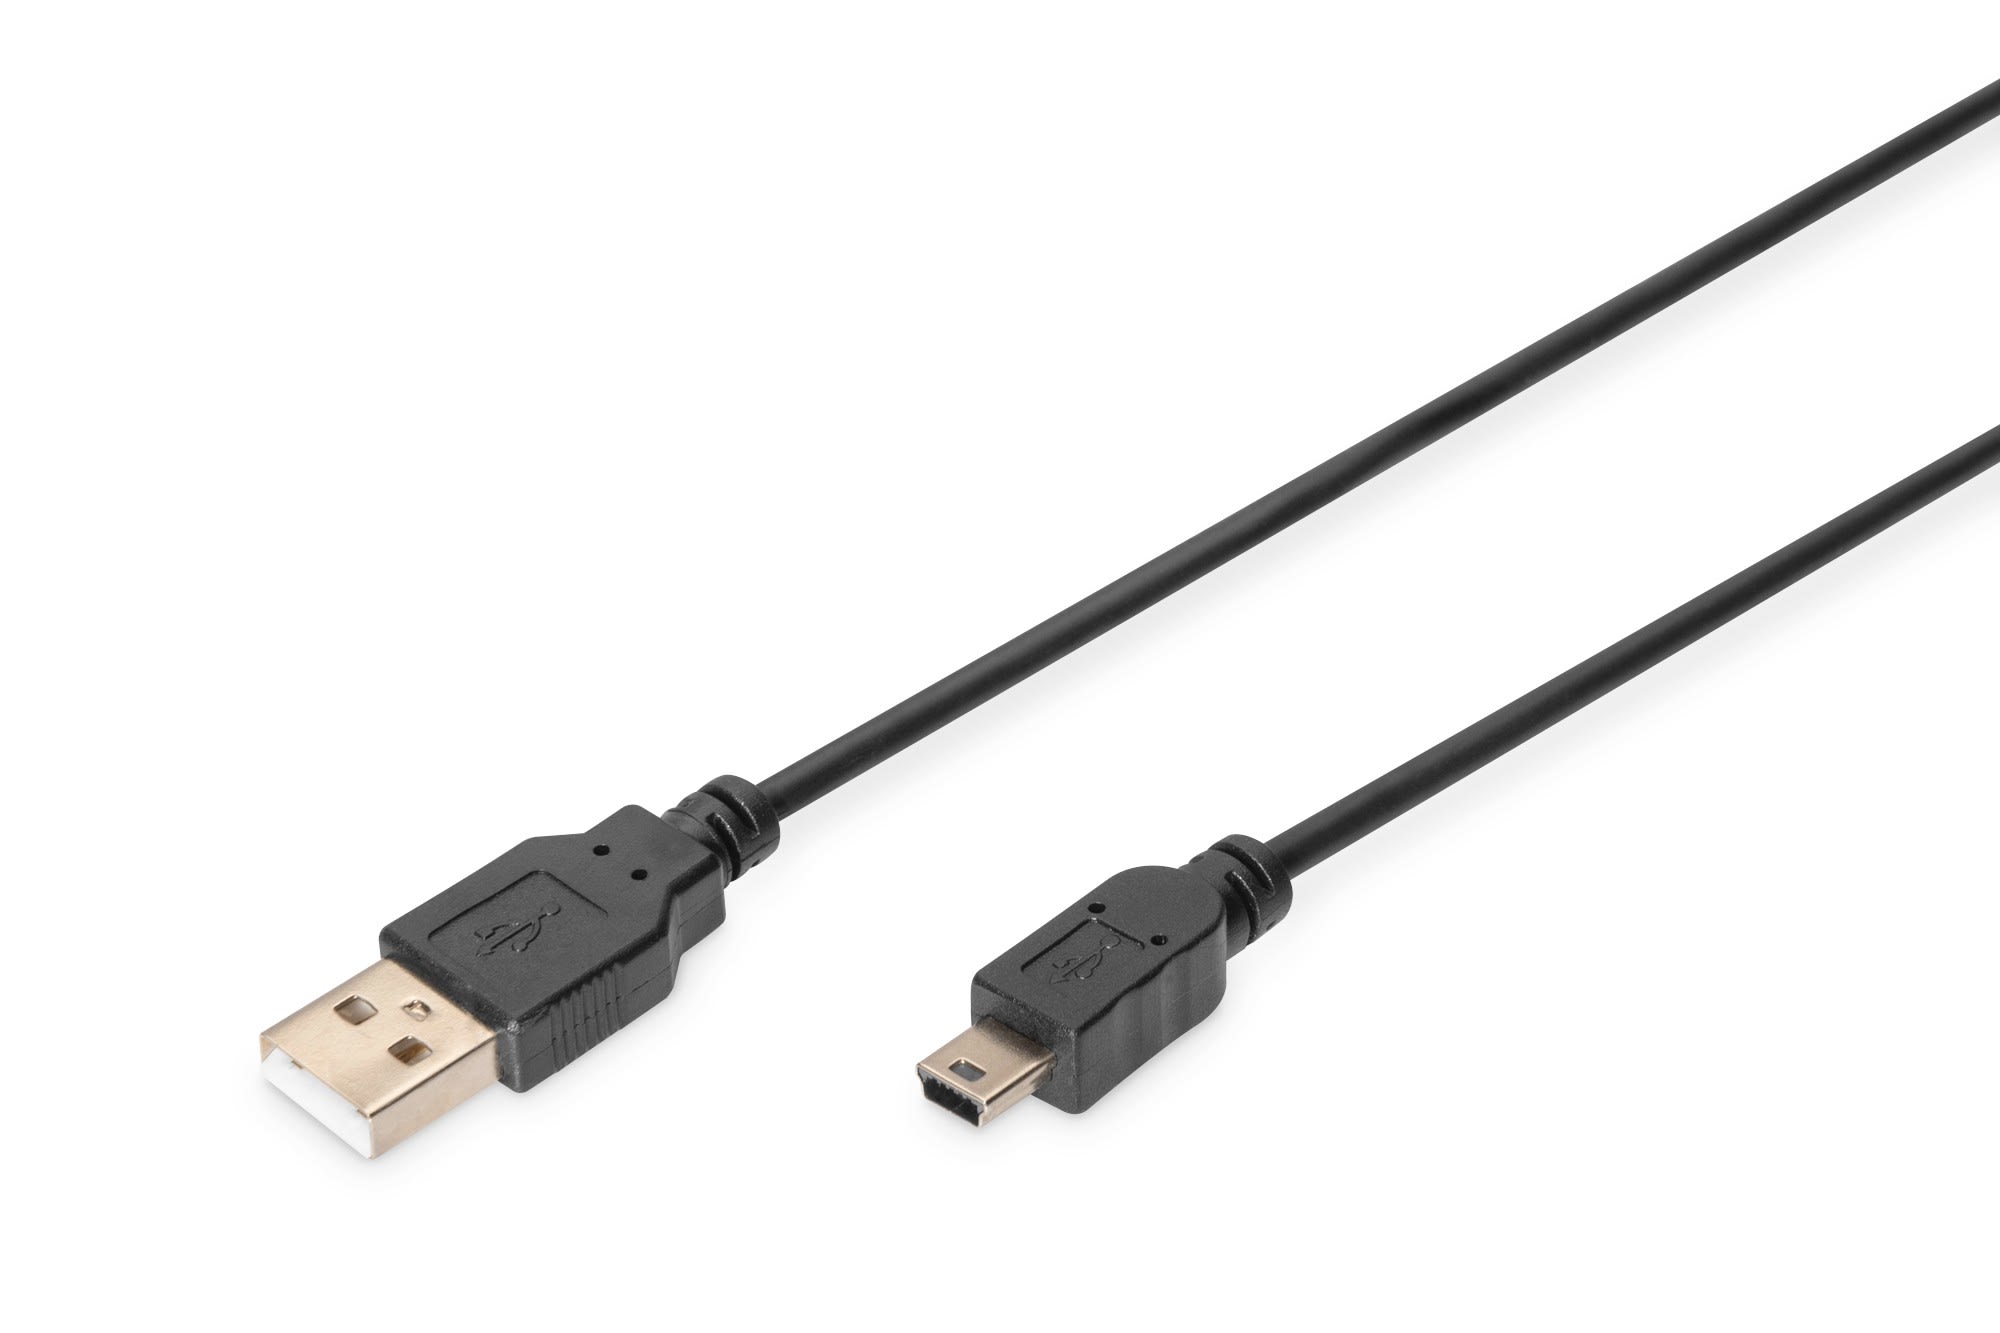 Assmann Electronic - USB 2.0 connection cable, type A - mini B (5pin) M-M, 1.0m, USB 2.0 conform, bl